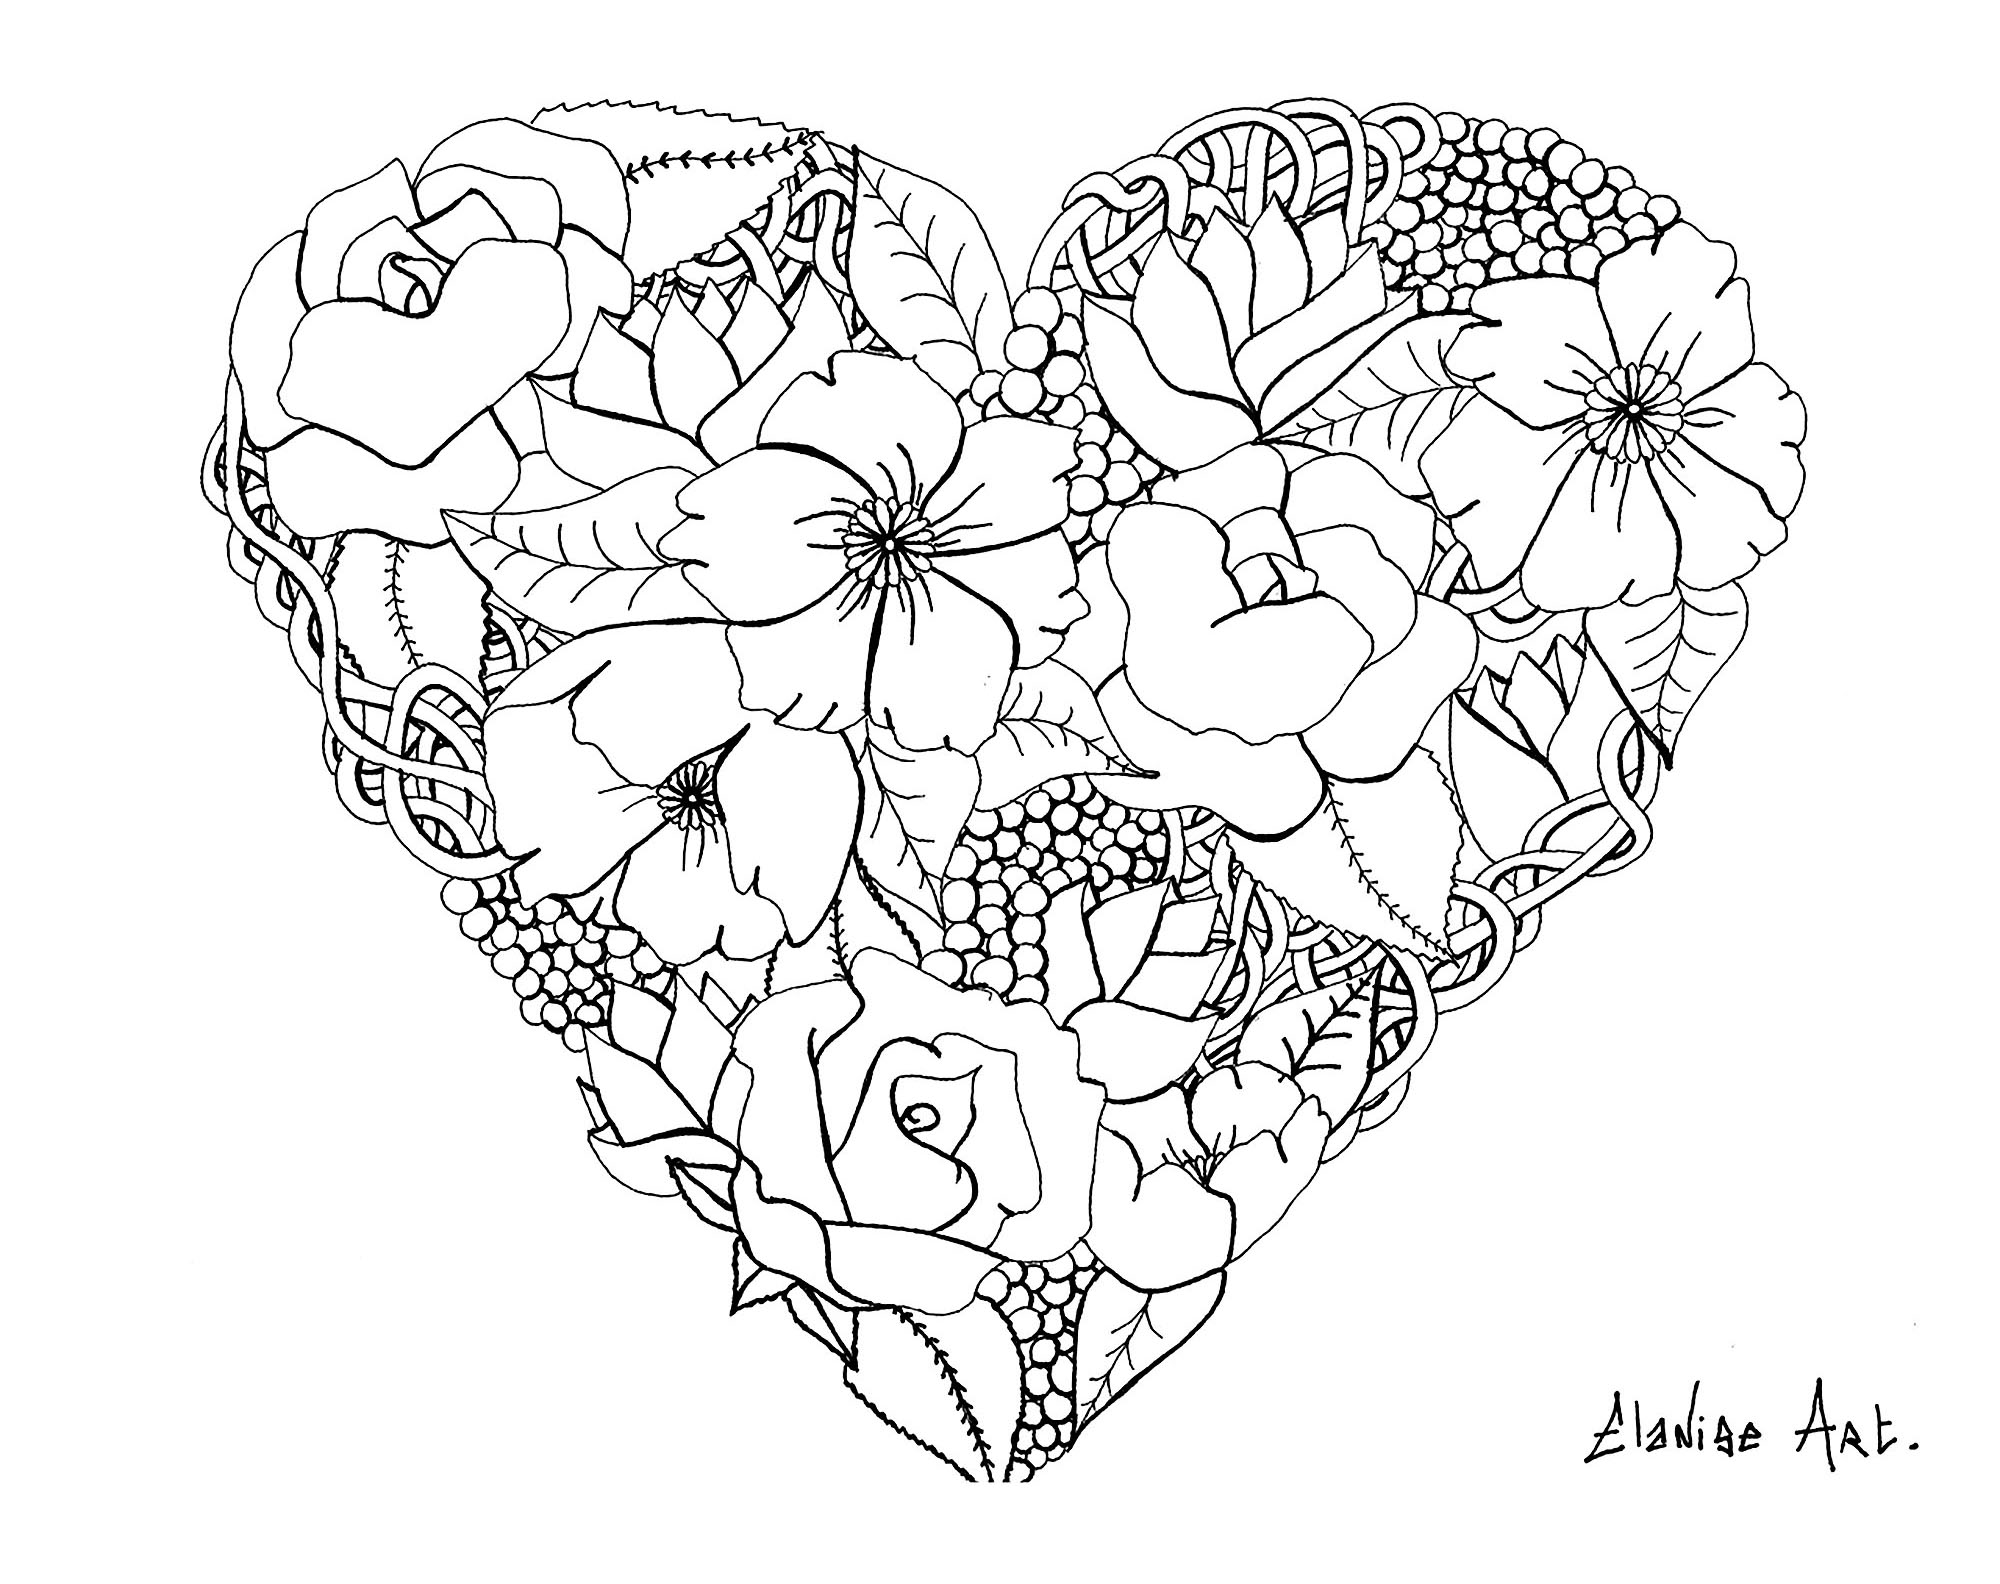 Bonito corazón florido, por Elanise. En realidad no es un mandala, sino una página para colorear con un corazón de flores realistas.